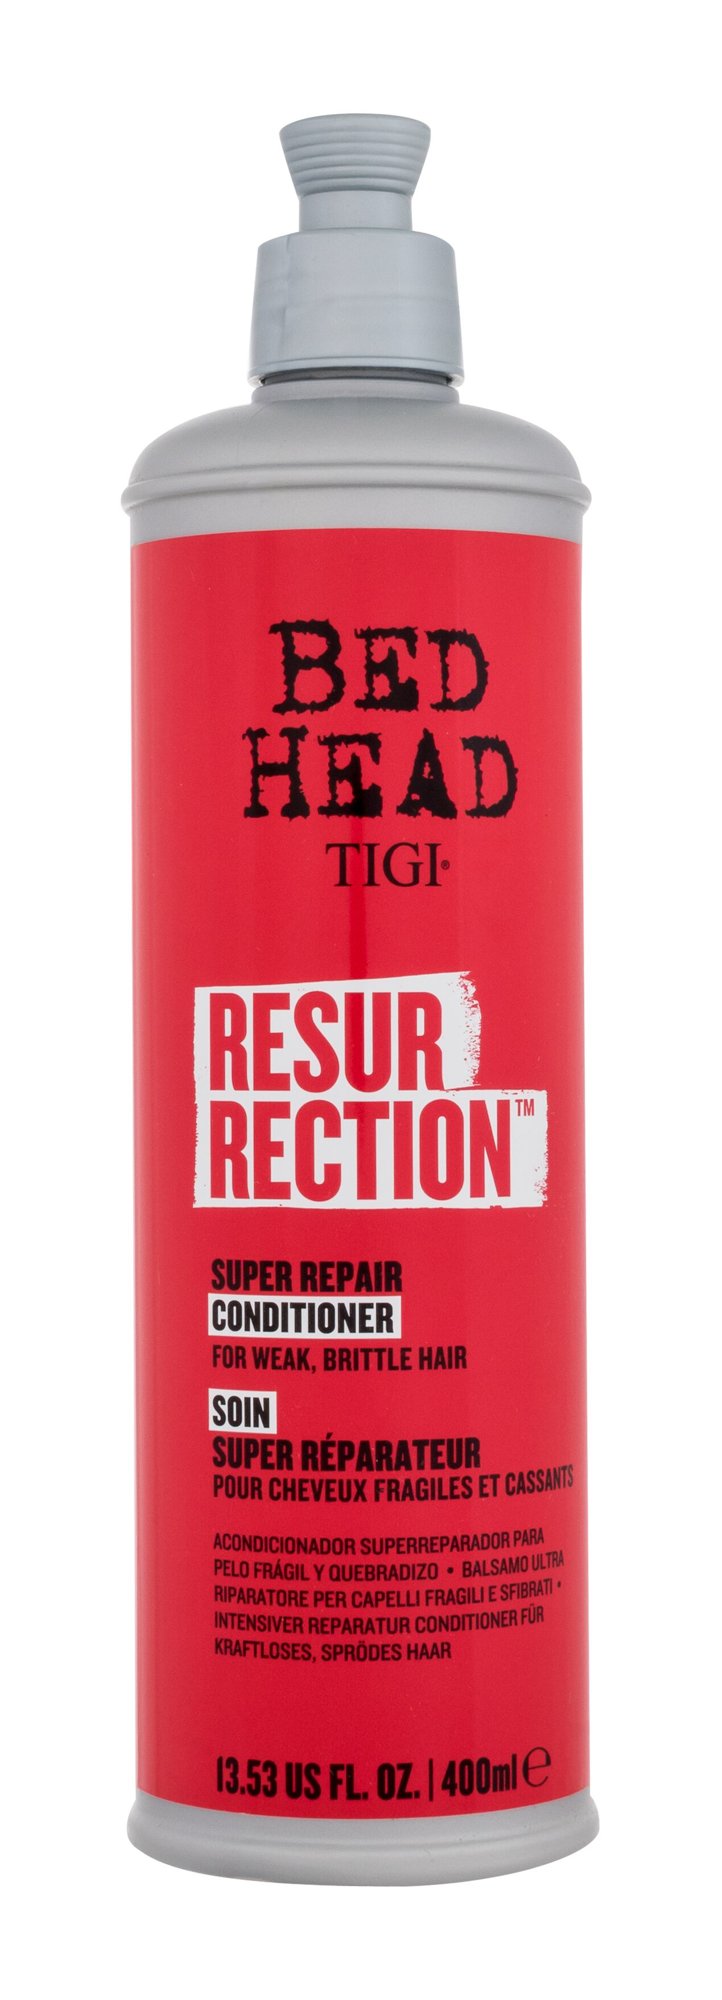 Tigi Bed Head Resurrection kondicionierius